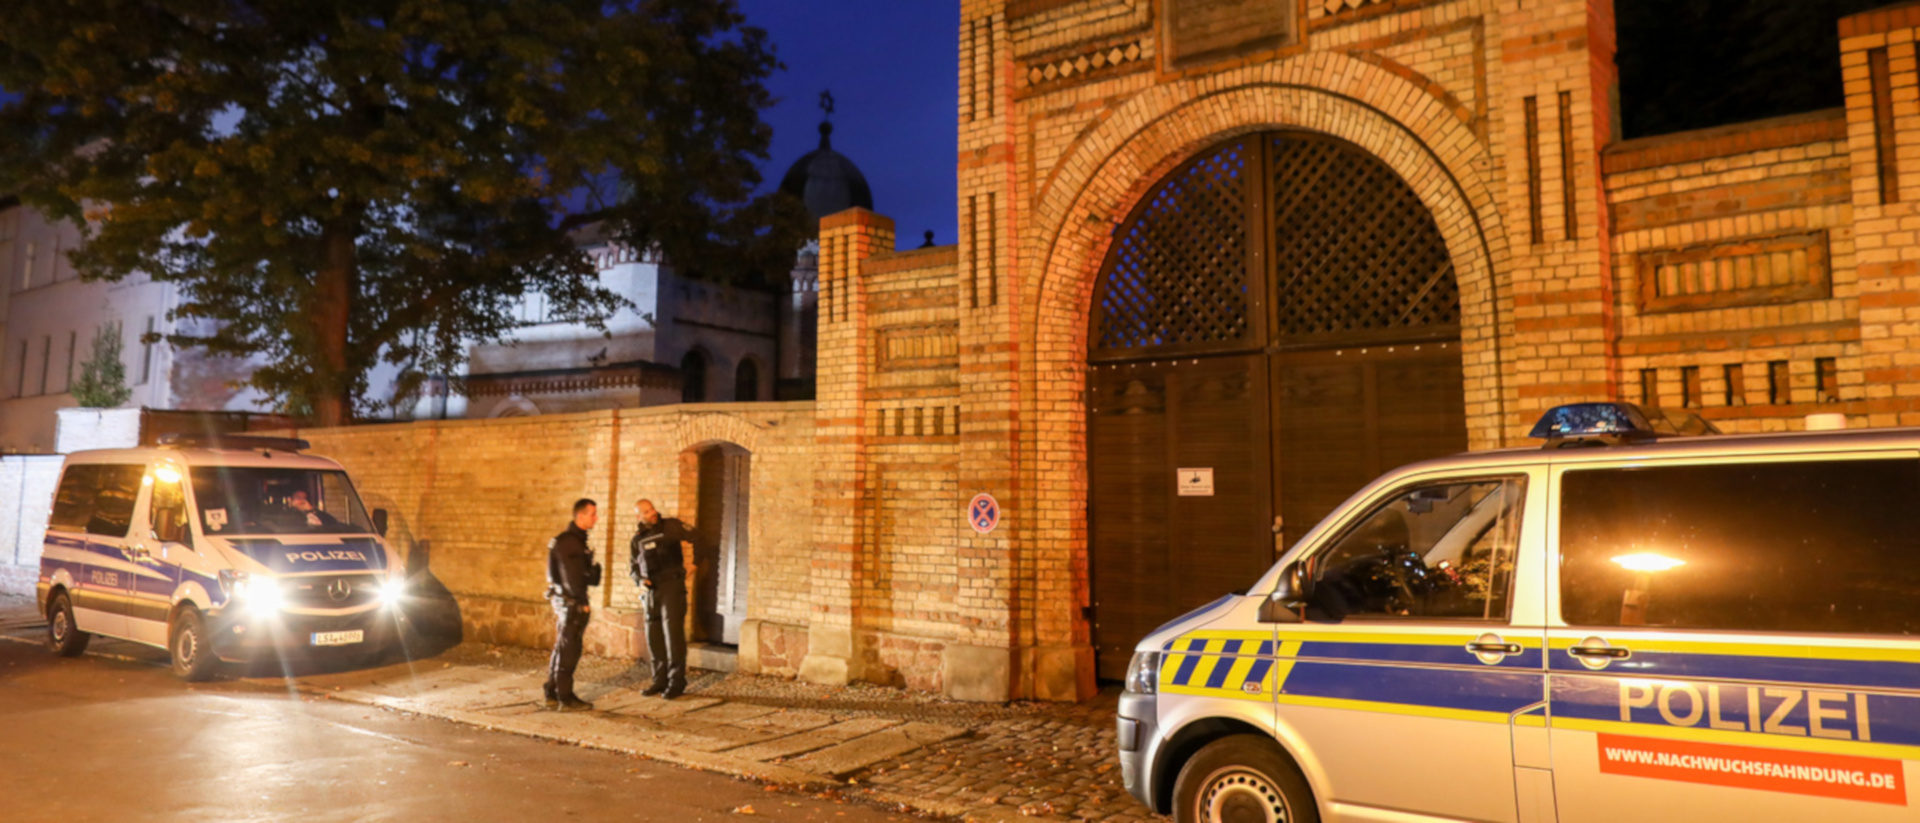 2019 erschoss ein Mann mit rechter Gesinnung vor einer Synagoge in Halle zwei Menschen.